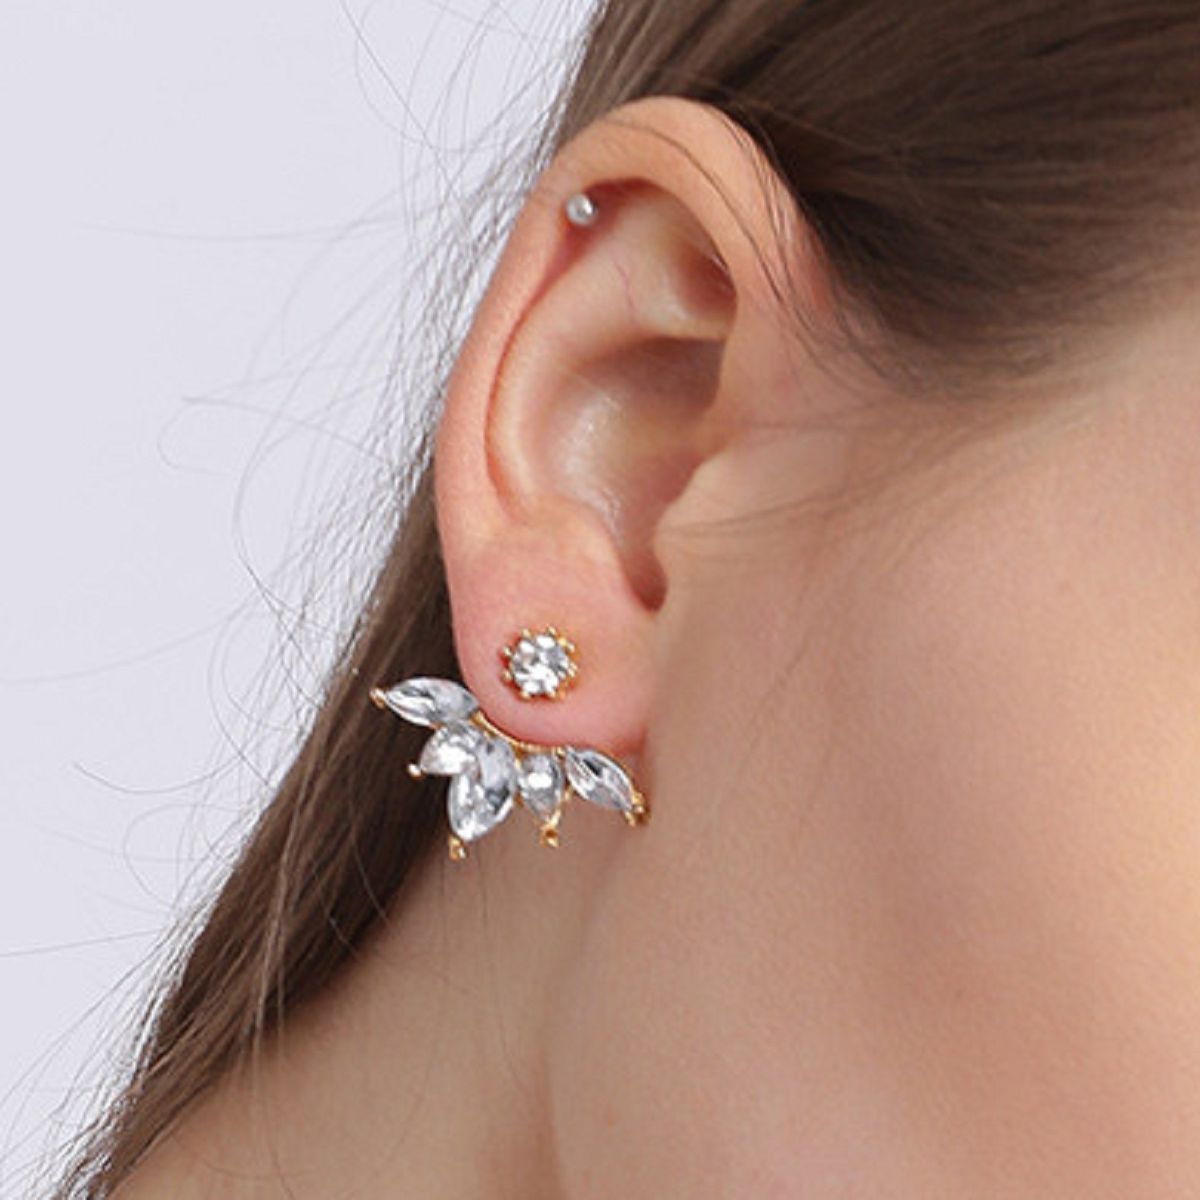 Buy Gold Earrings for Women by VEMBLEY Online  Ajiocom